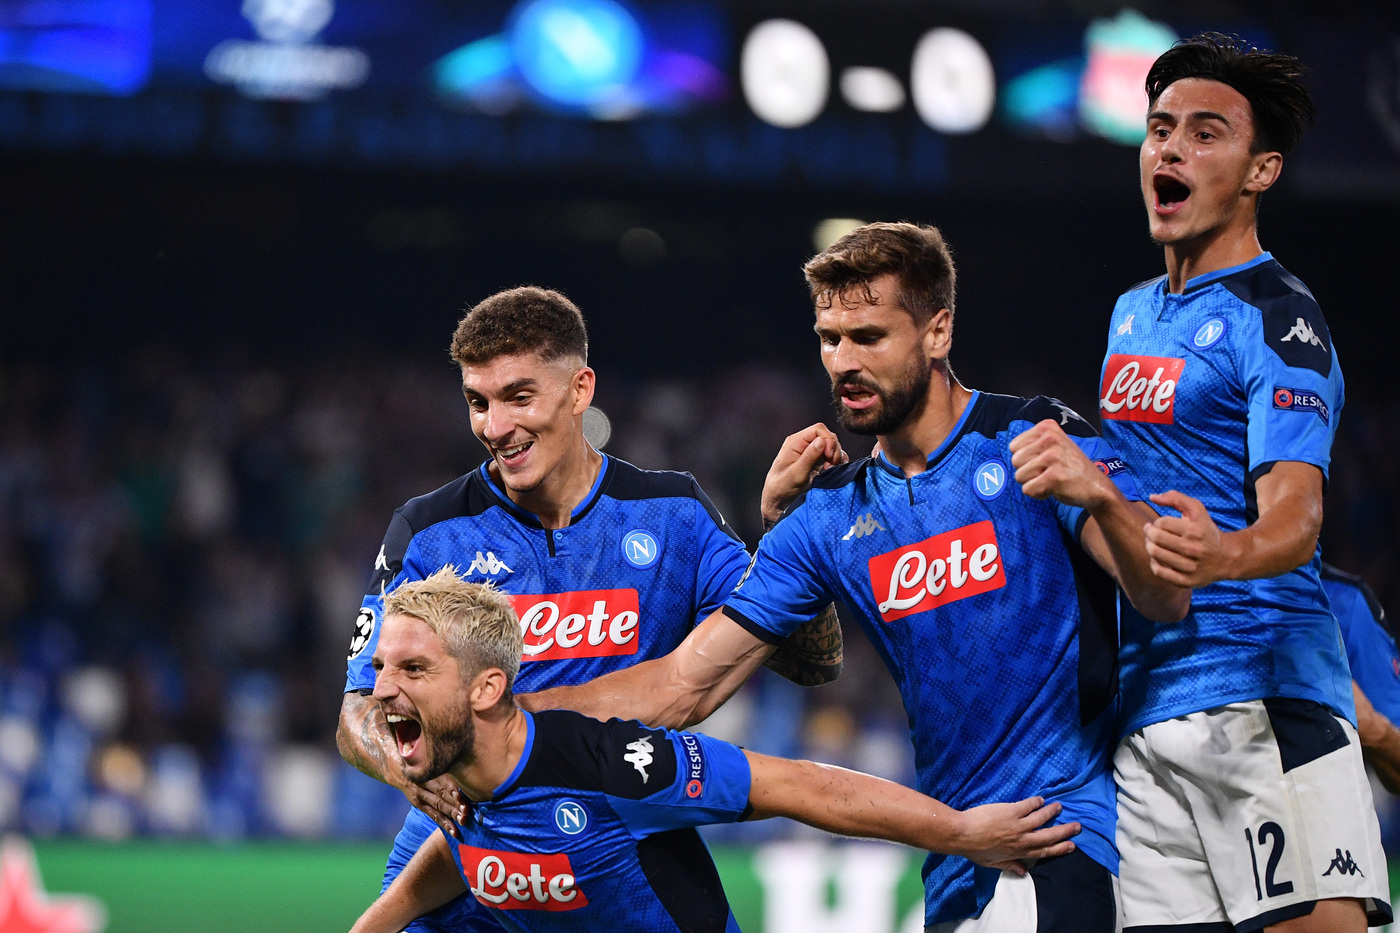 Napoli-Brescia 29 settembre: il pronostico di Serie A